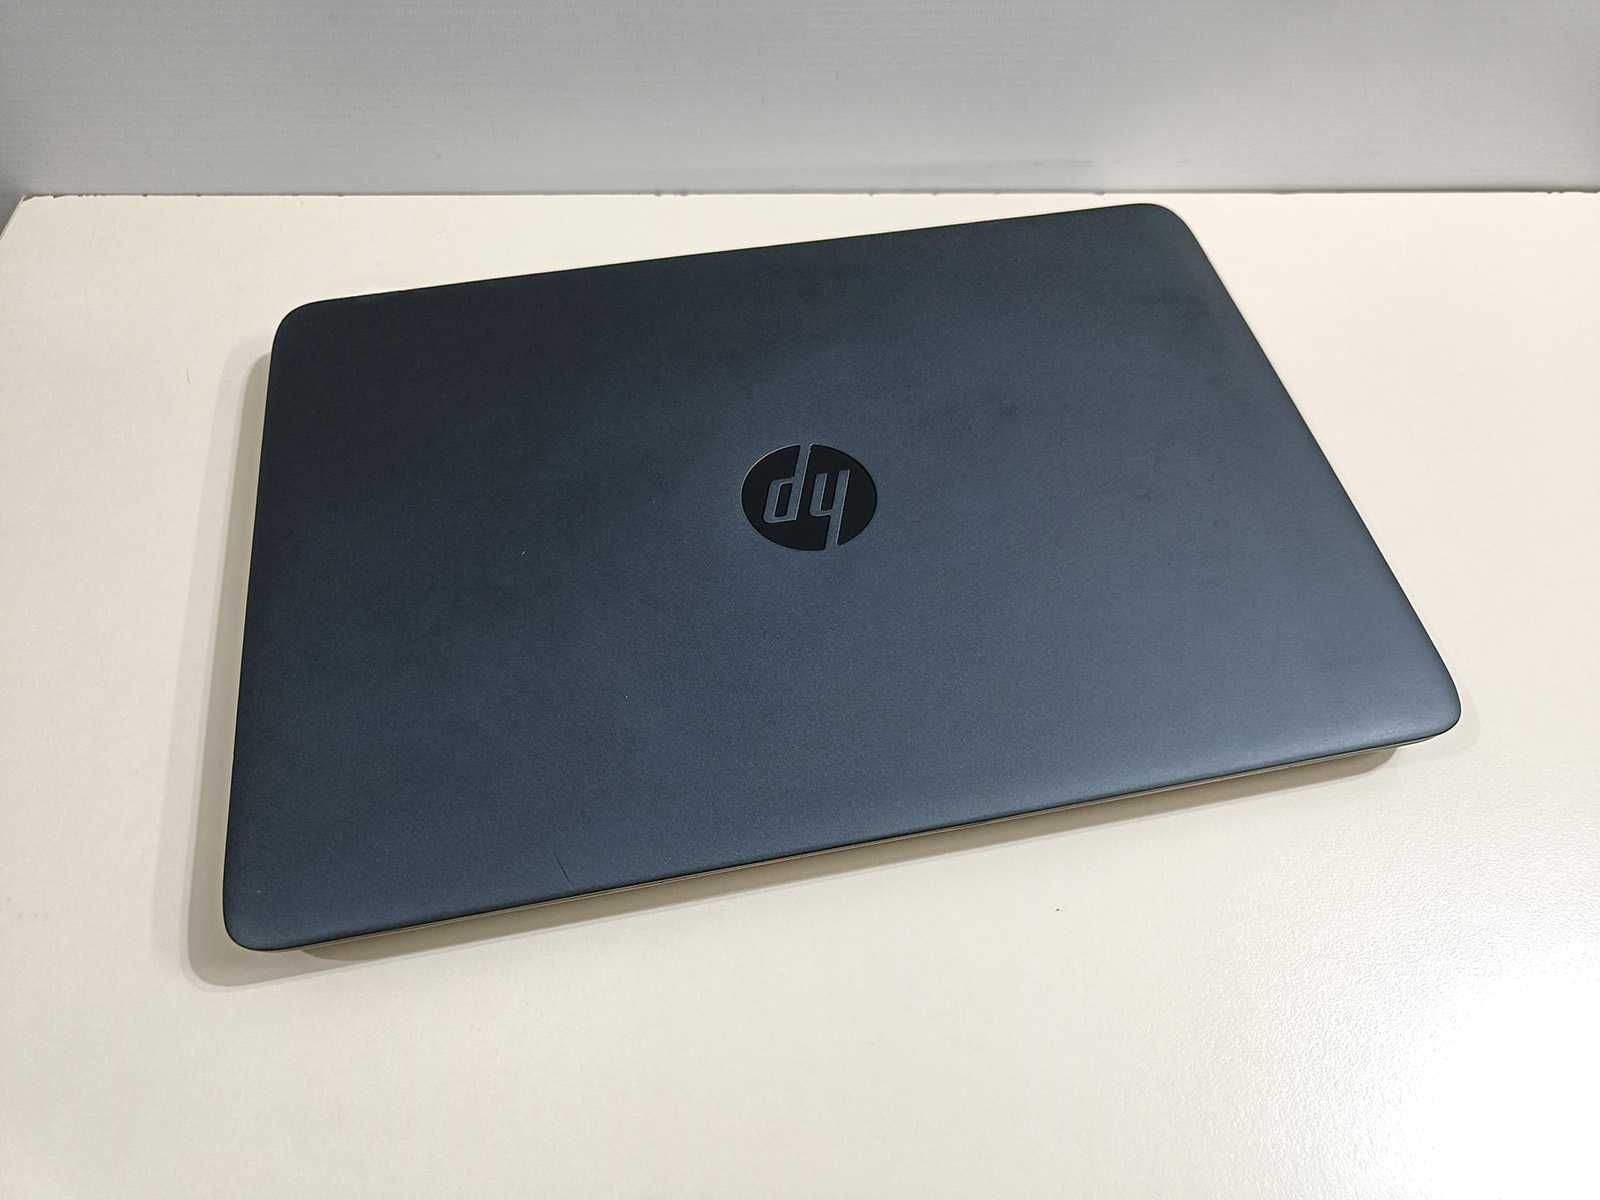 HP EliteBook 745 G2 (A8 PRO-7150B \ 8Gb RAM \ 256Gb SSD \ Radeon R5)